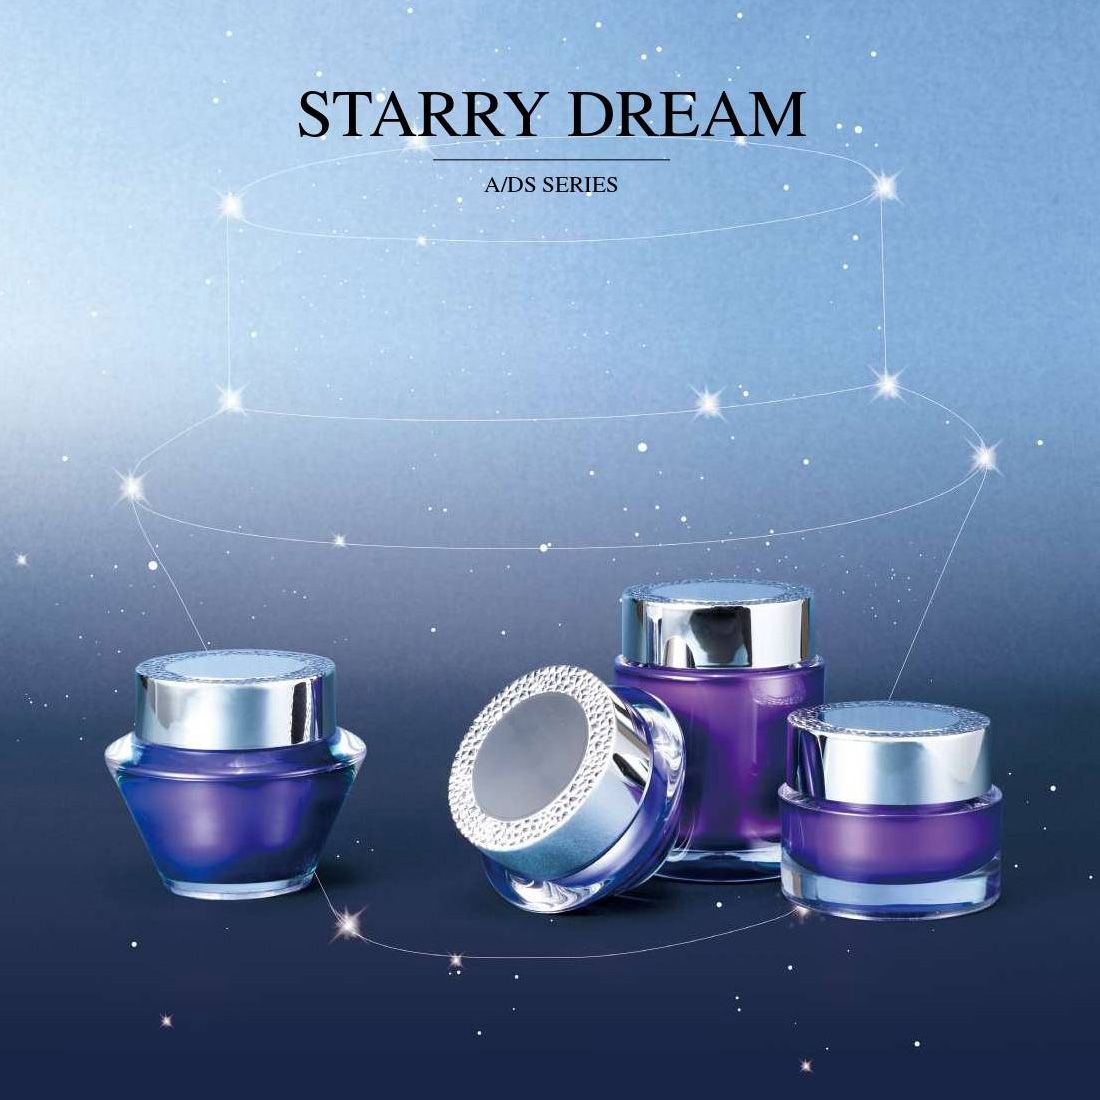 Starry Dream (아크릴 럭셔리 화장품 및 스킨케어 포장) A / DS 시리즈